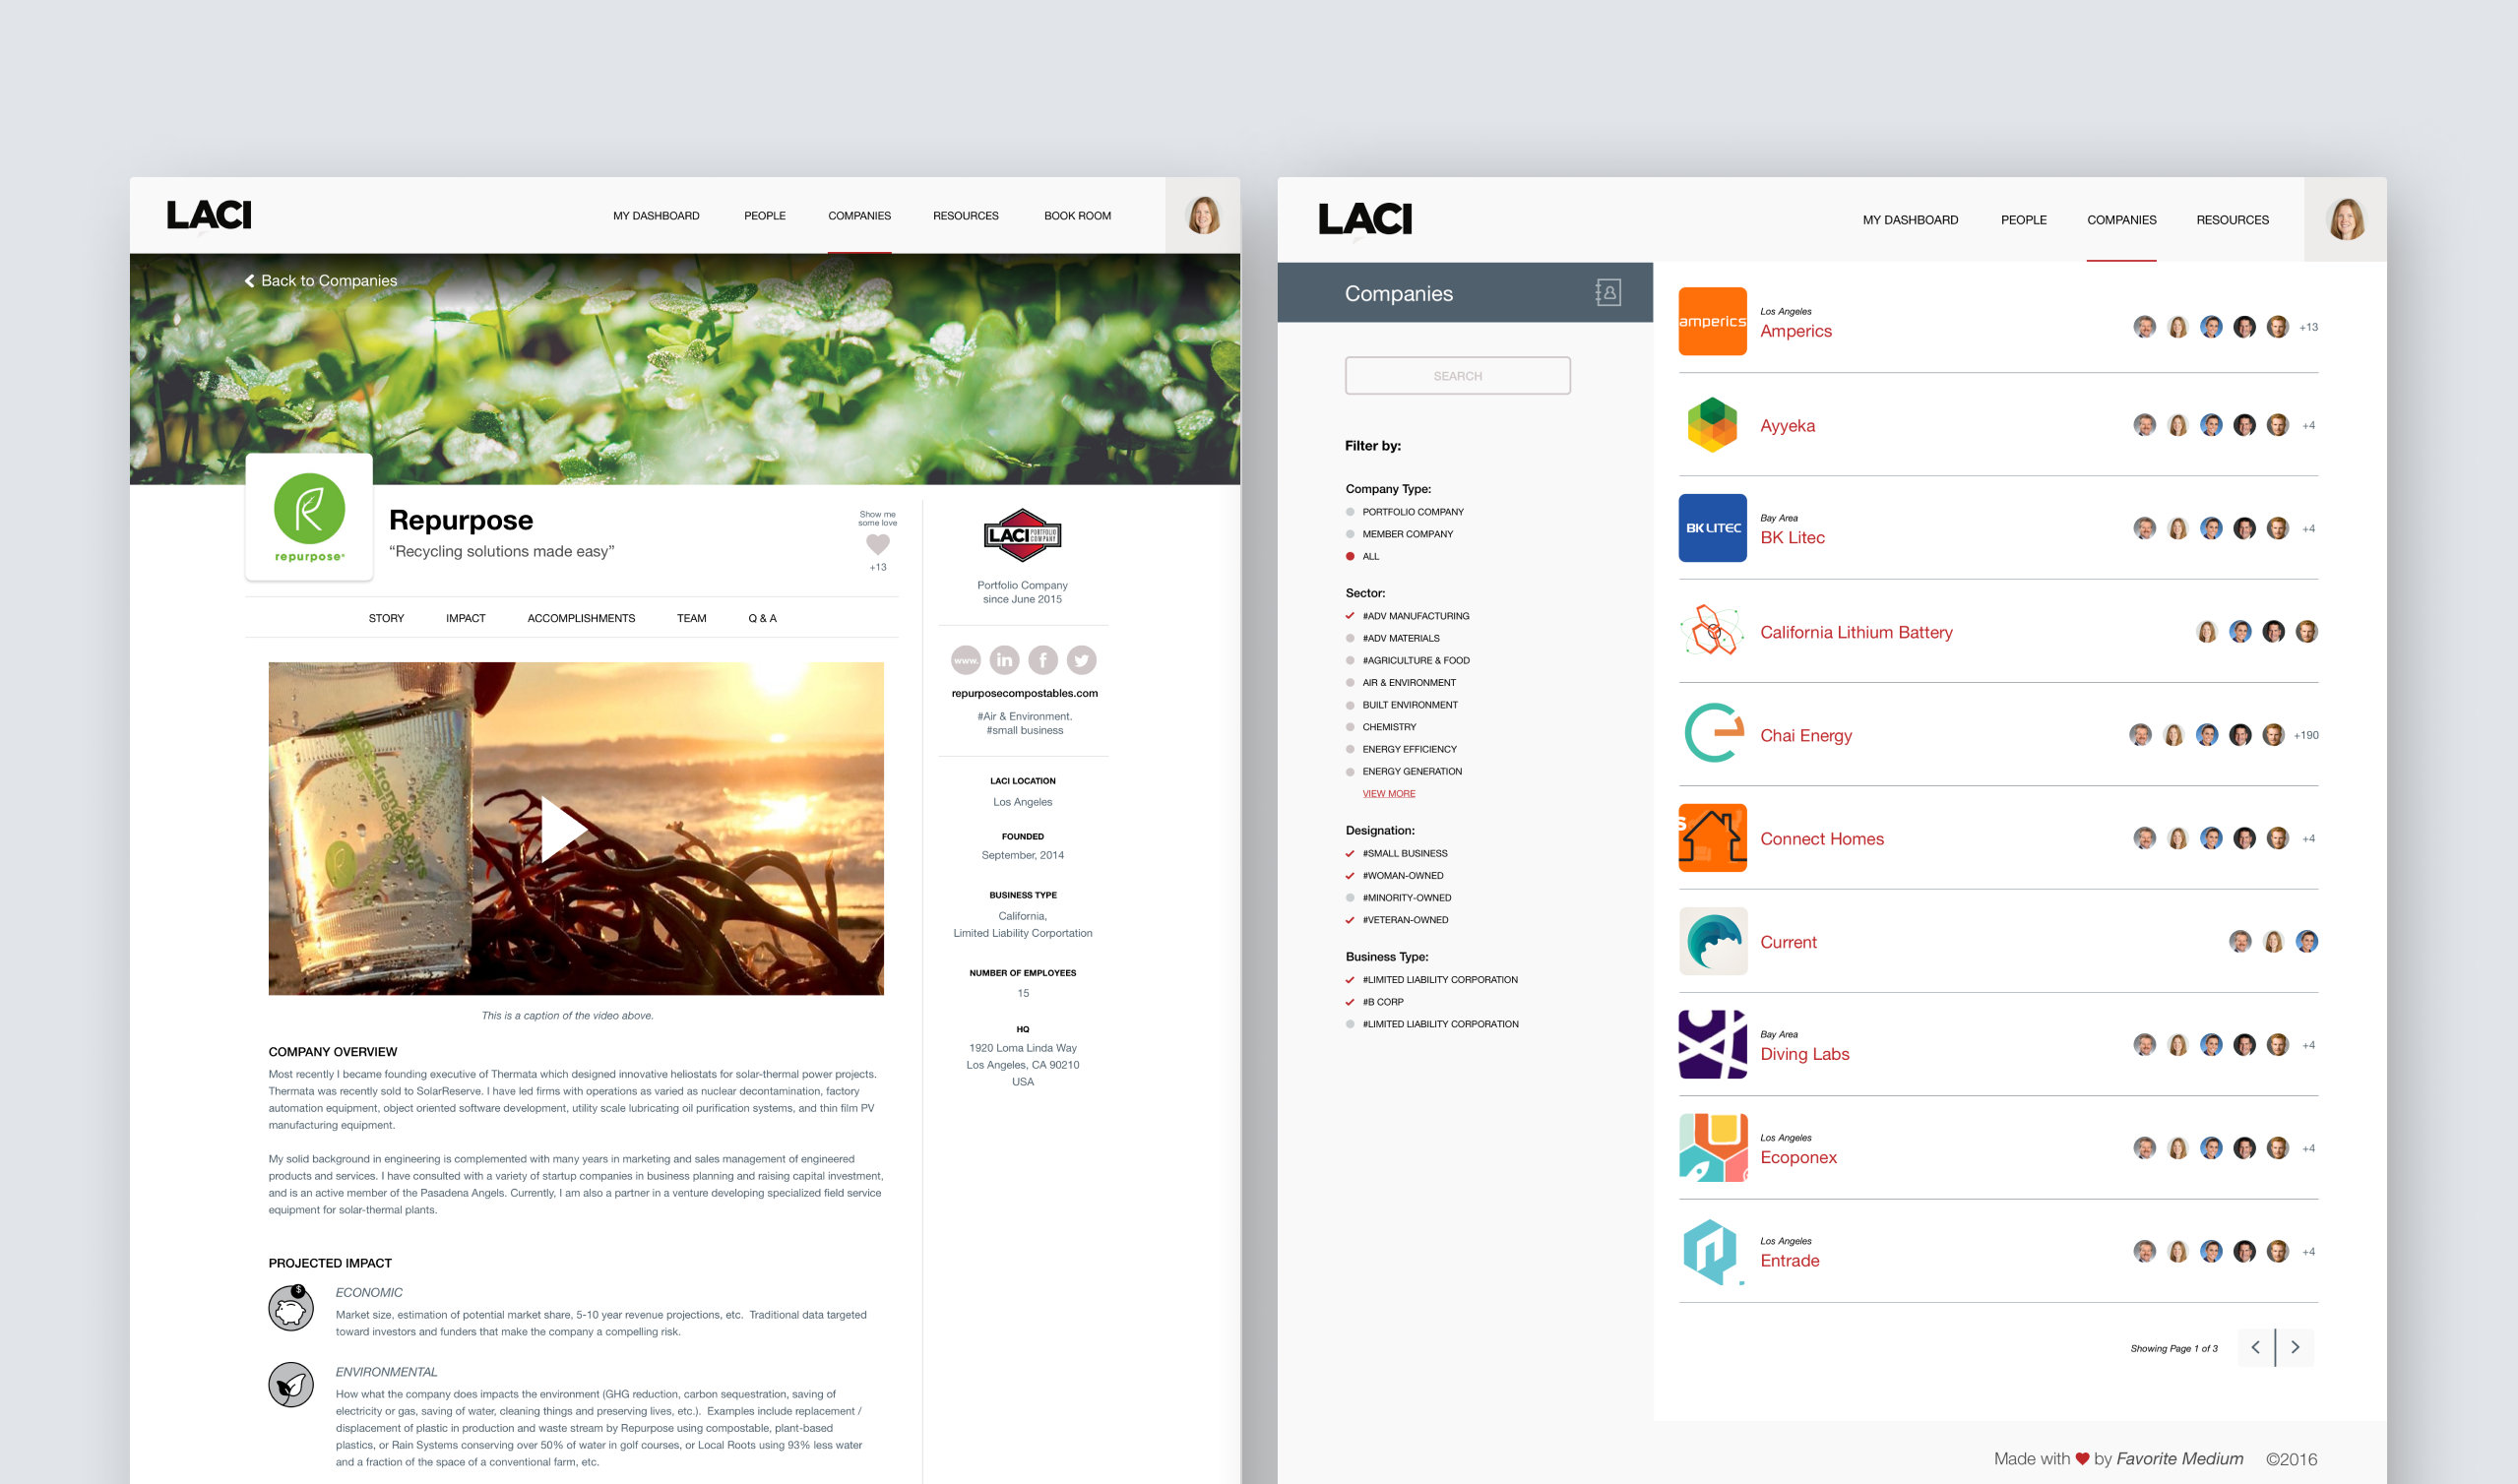 2 UI designs from the portfolio company platforms